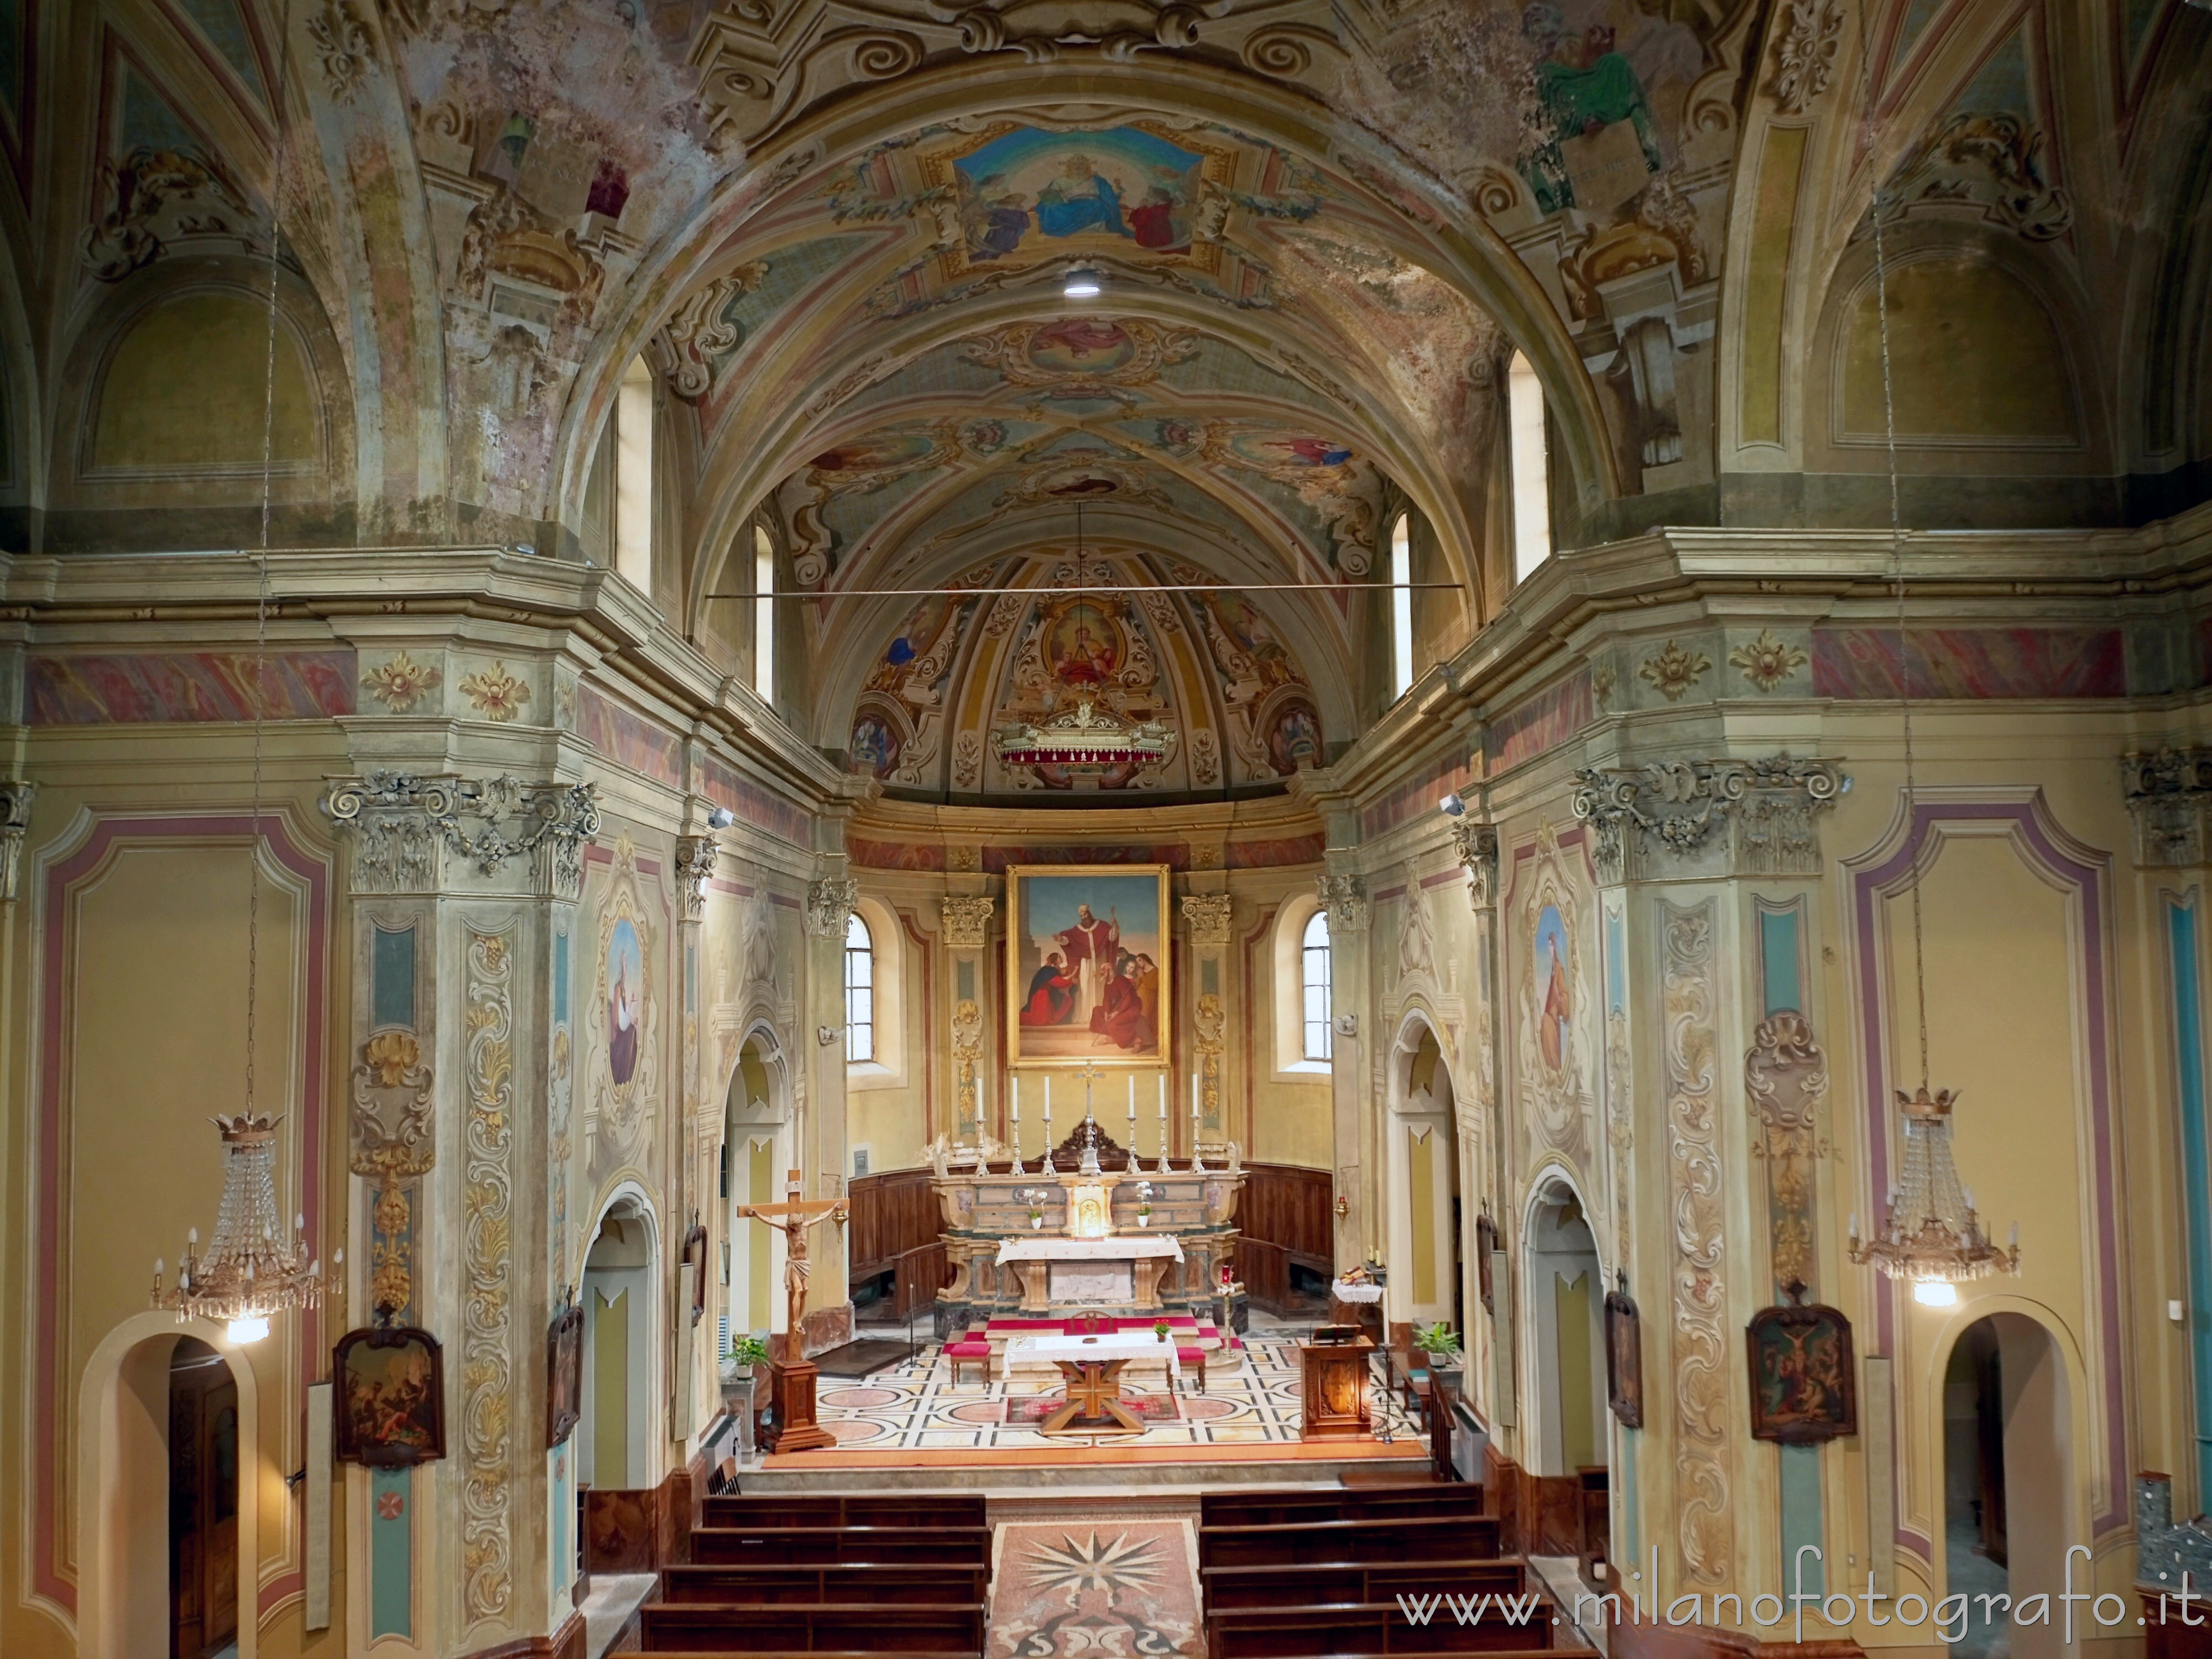 Tollegno (Biella, Italy): Interior of the Church of San Germano - Tollegno (Biella, Italy)